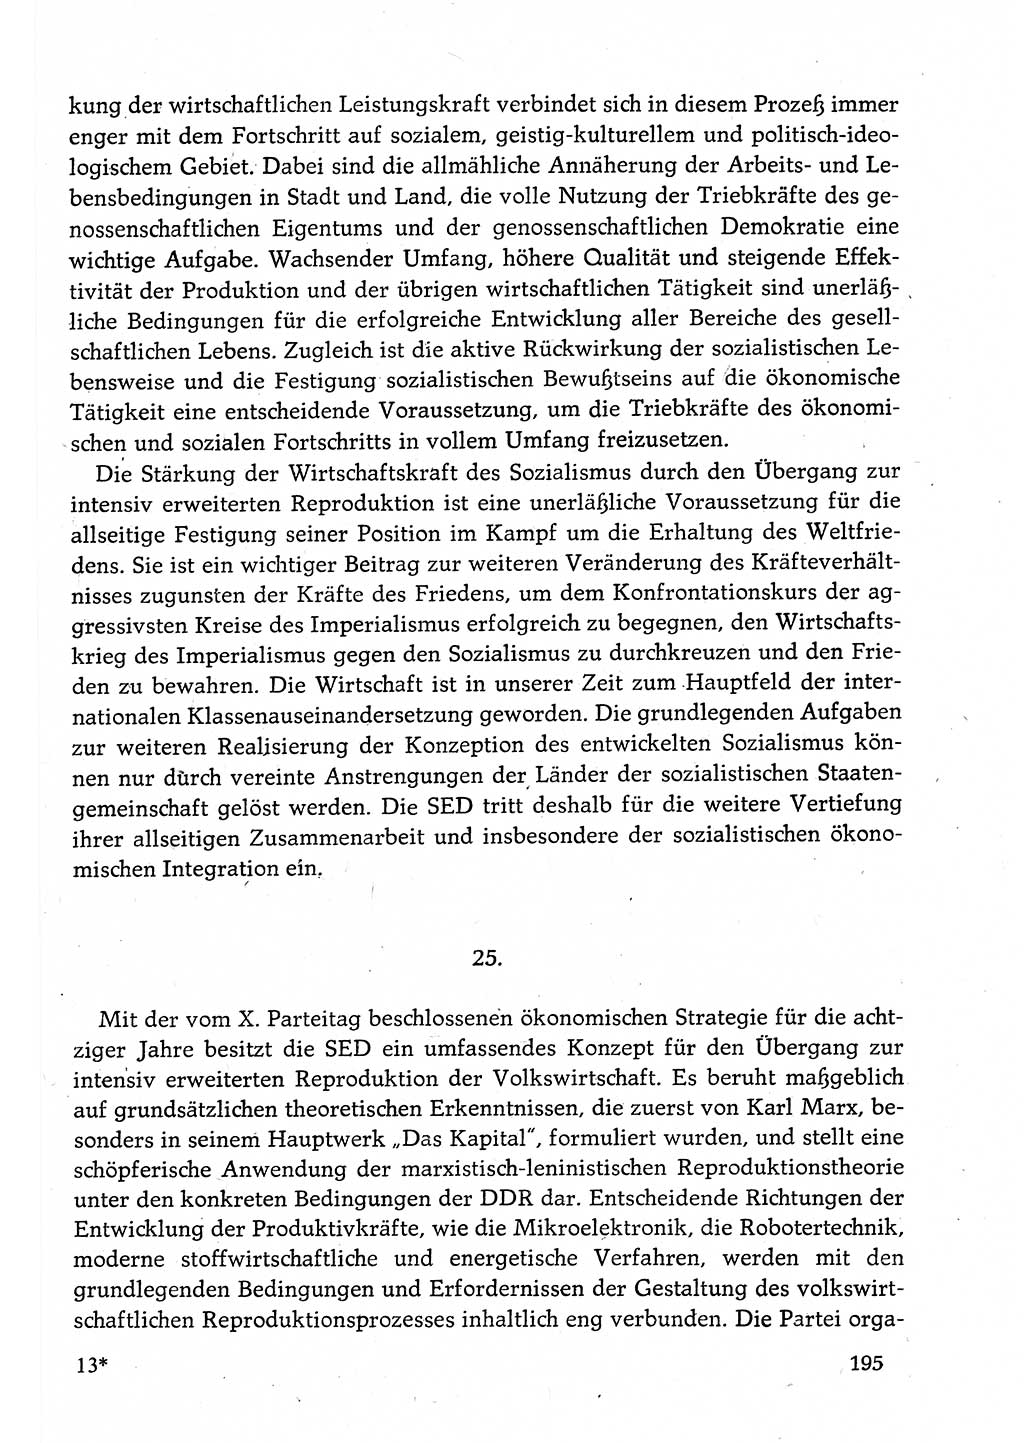 Dokumente der Sozialistischen Einheitspartei Deutschlands (SED) [Deutsche Demokratische Republik (DDR)] 1982-1983, Seite 195 (Dok. SED DDR 1982-1983, S. 195)